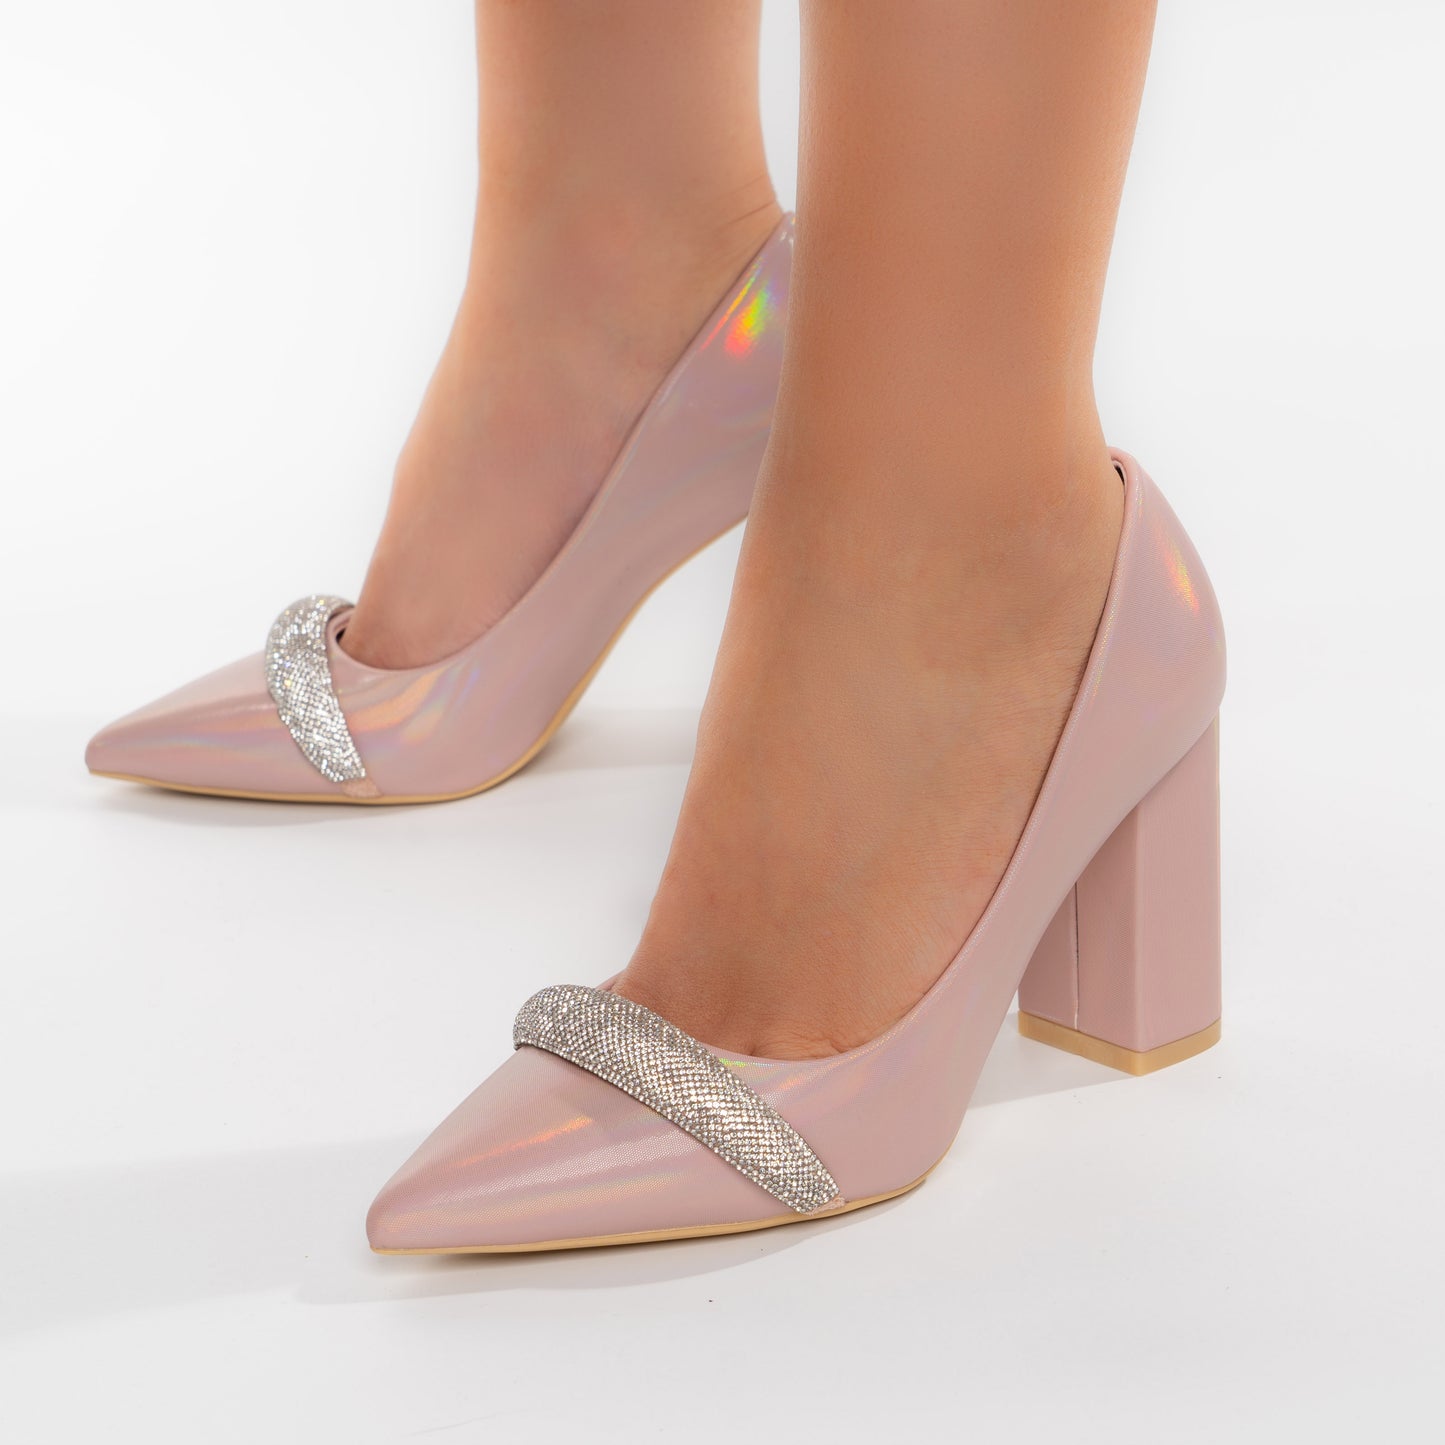 Pantofi Eleganti Cu Toc Gros 9cm Si Bareta Decorativa - Esra